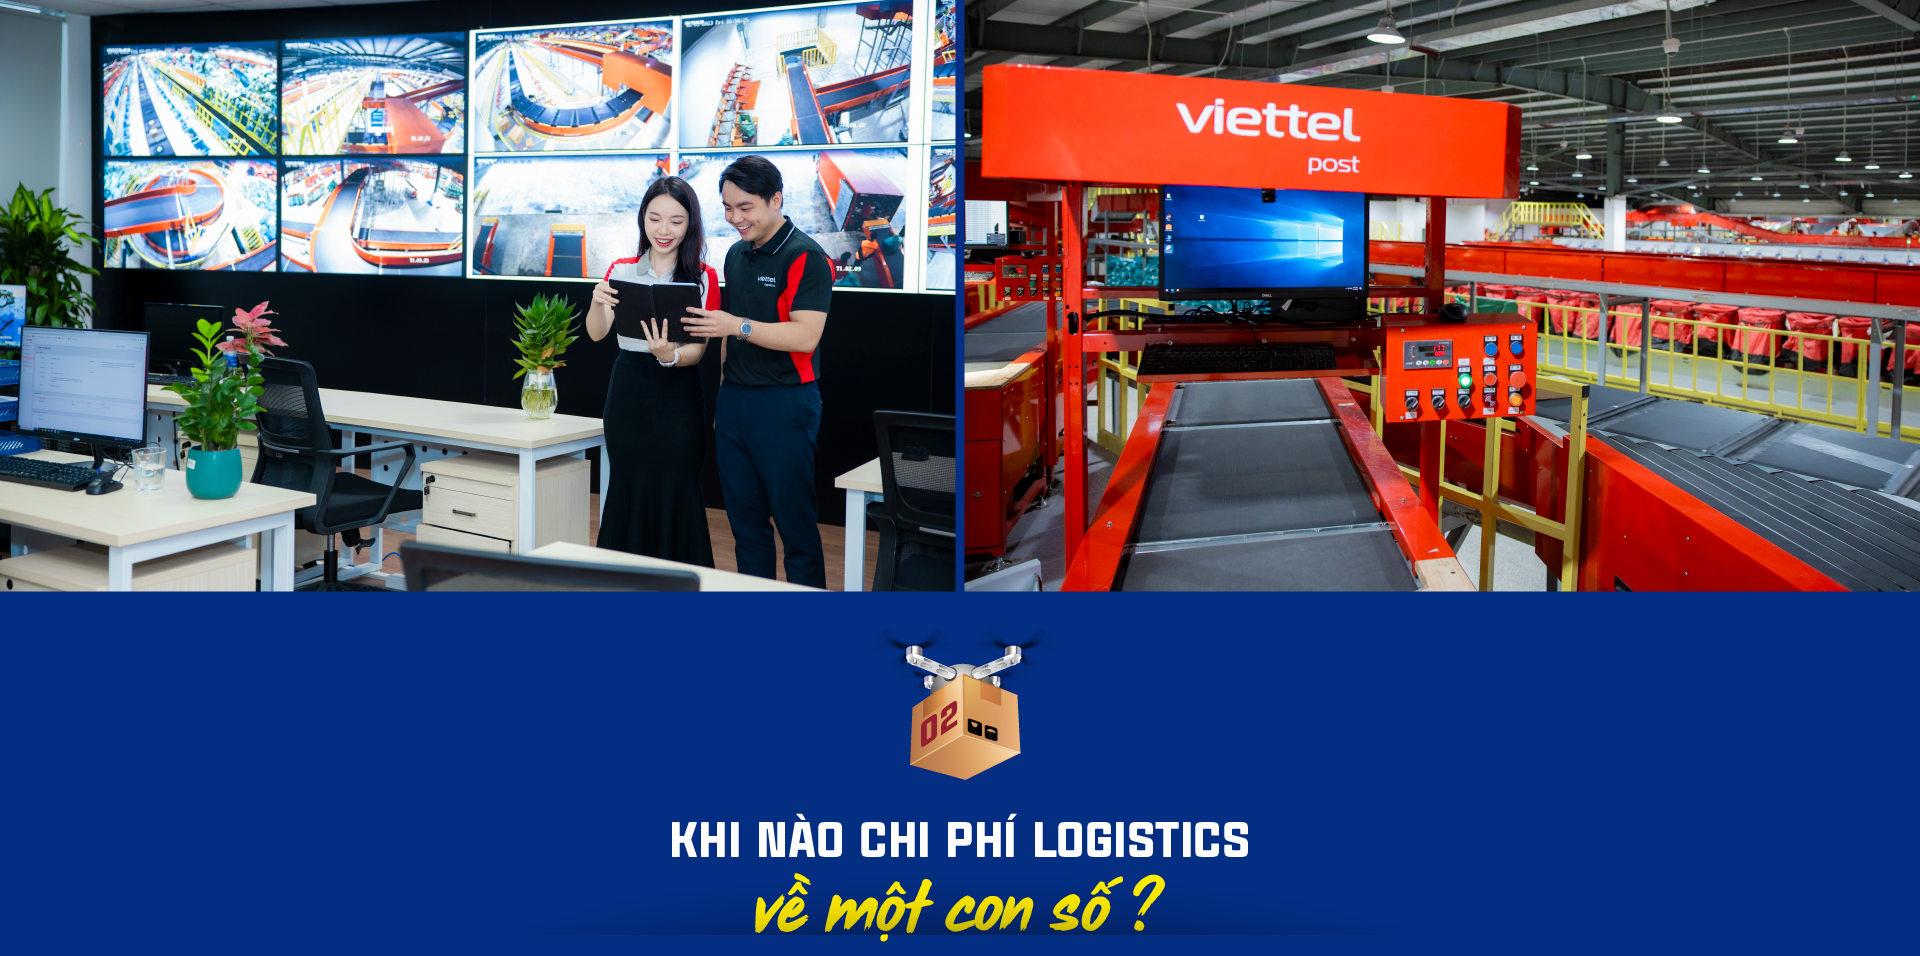 Kỳ vọng giảm chi phí logistics của Việt Nam xuống một con số - Ảnh 5